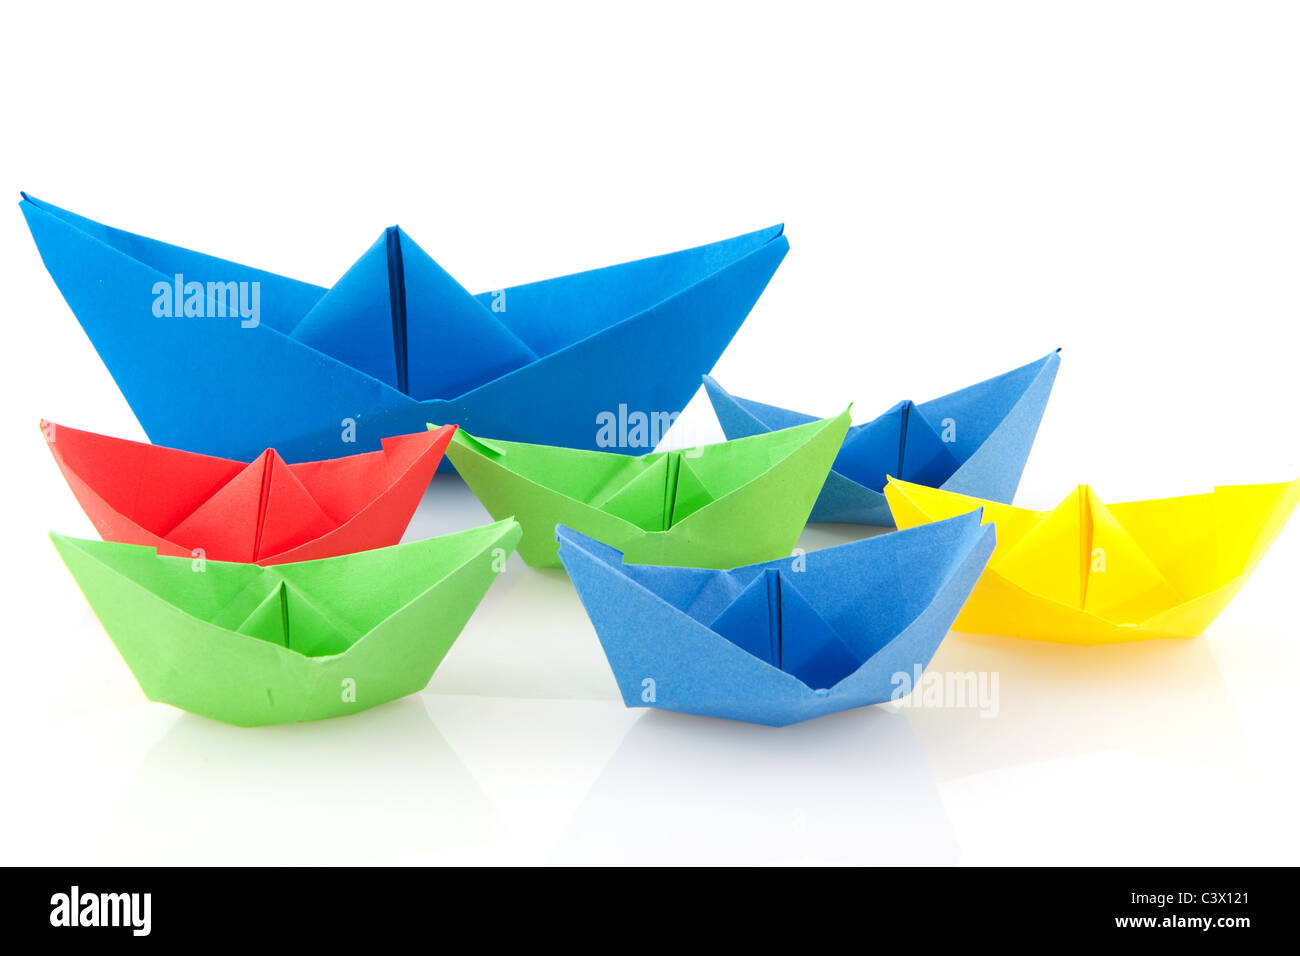 De nombreux bateaux de papier pliée colorés sur fond blanc Banque D'Images